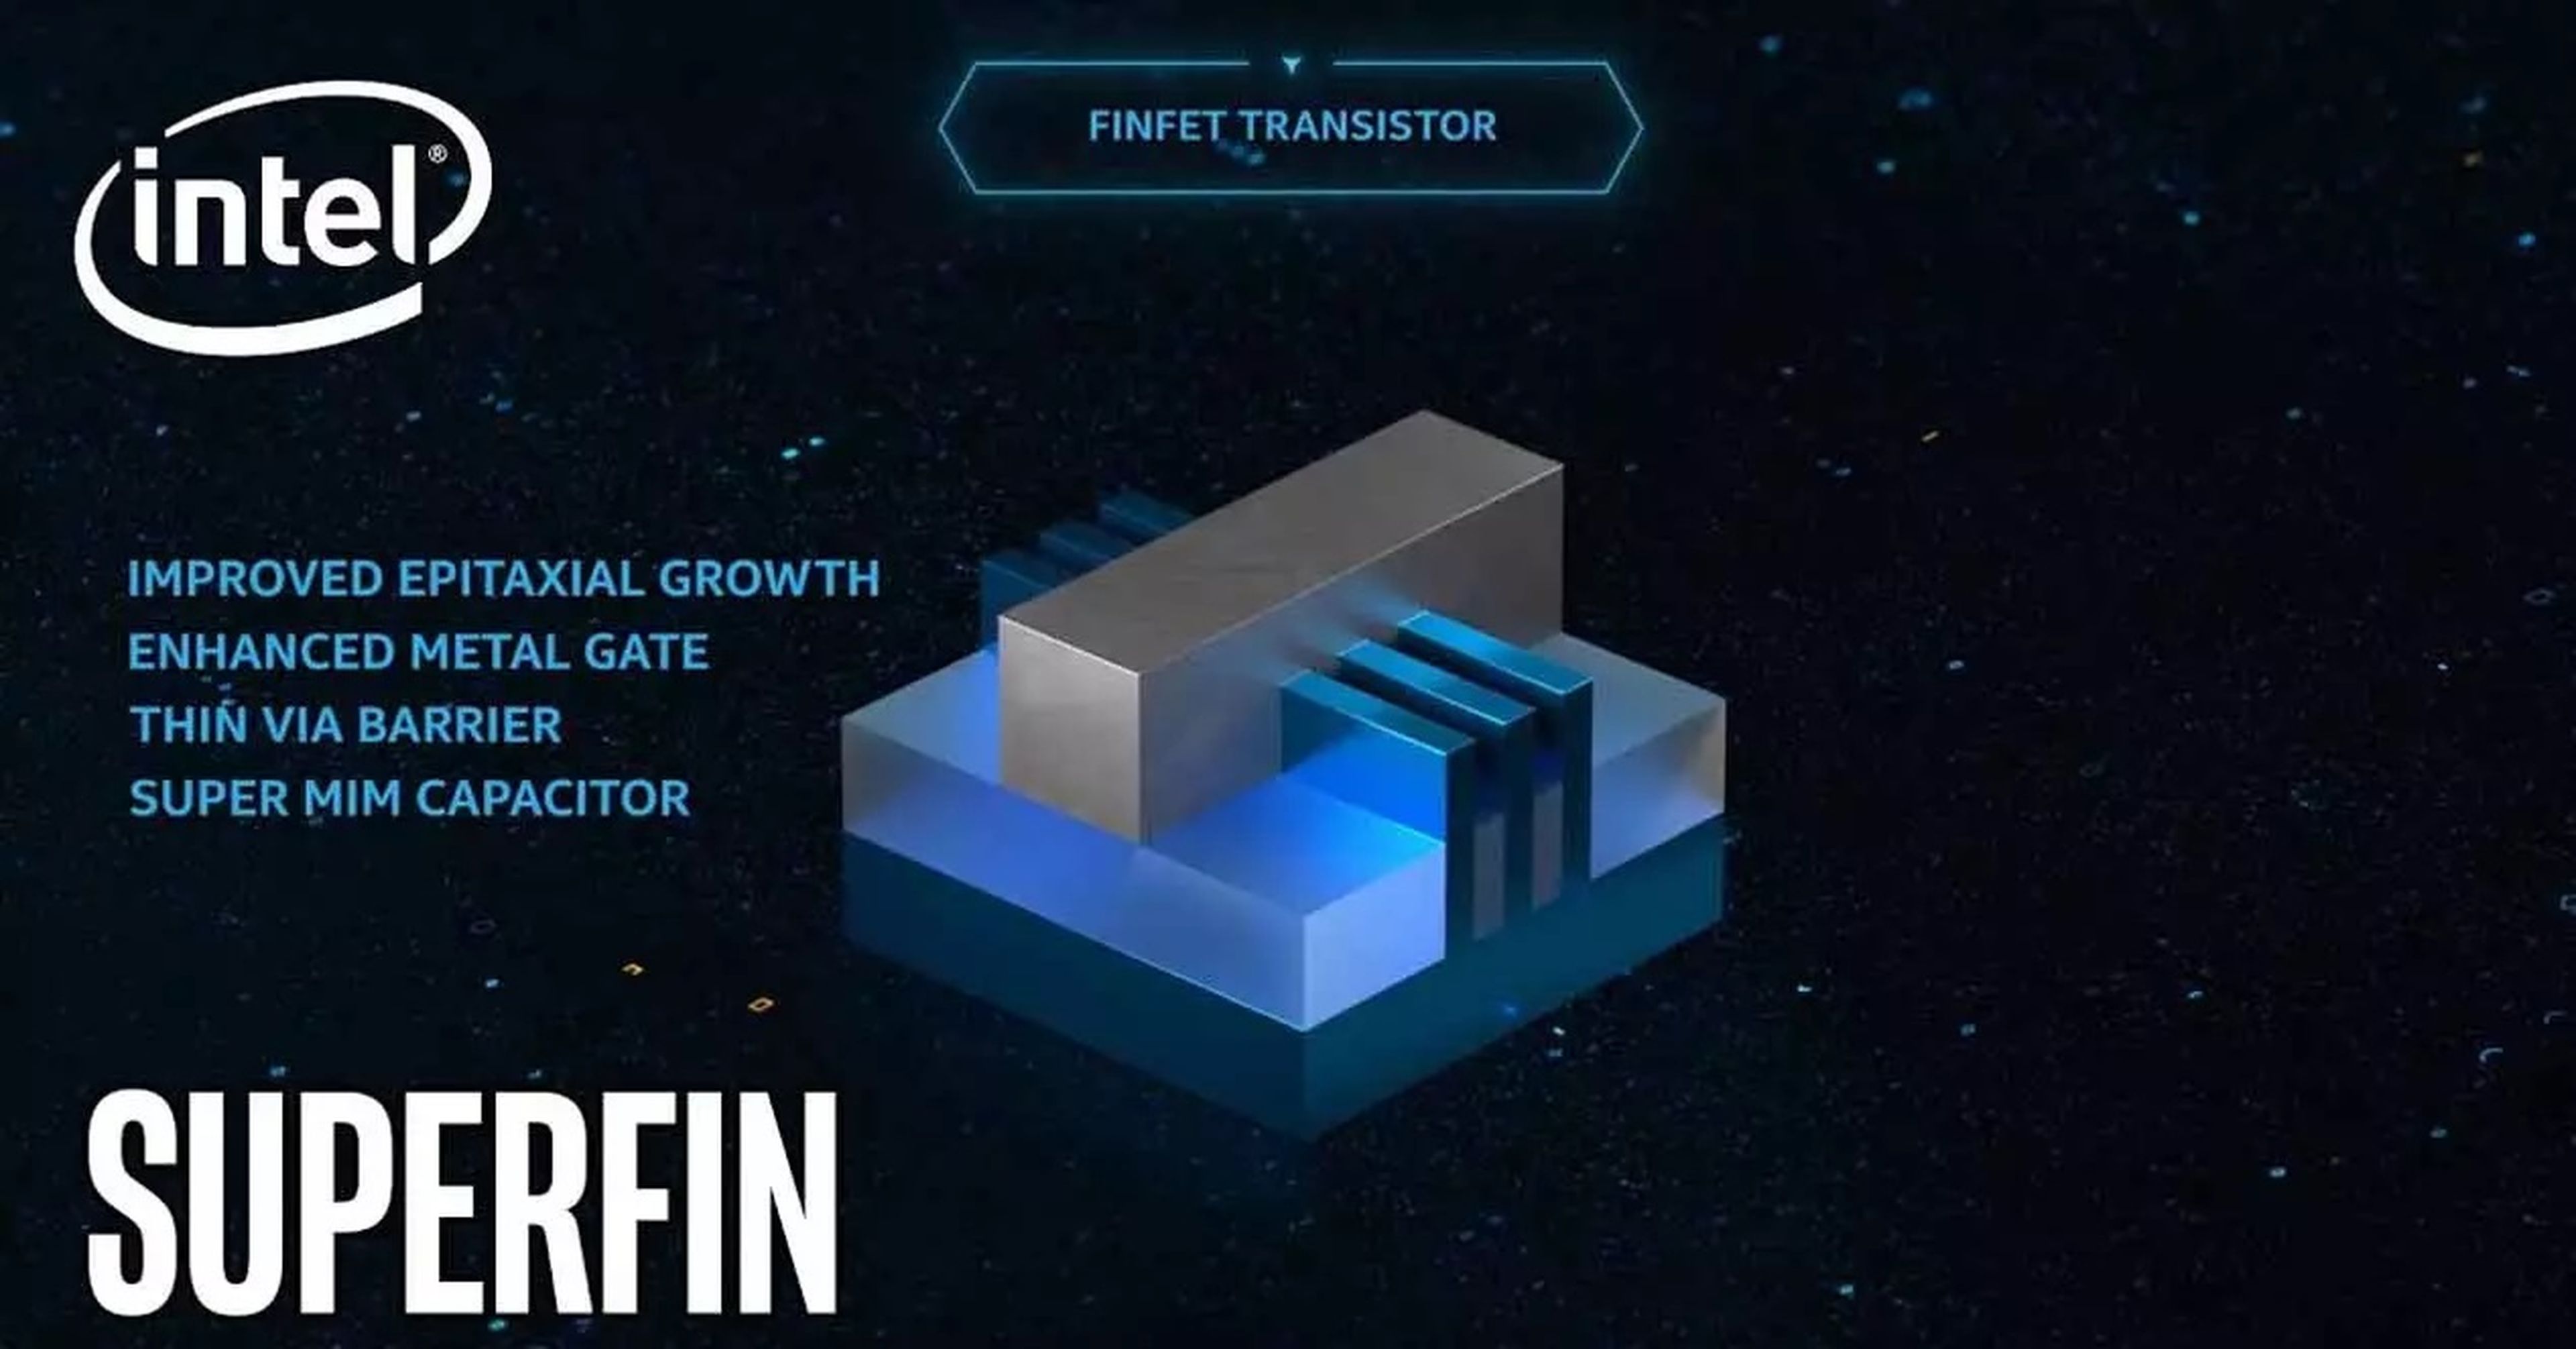 FinFet Transistor de Intel